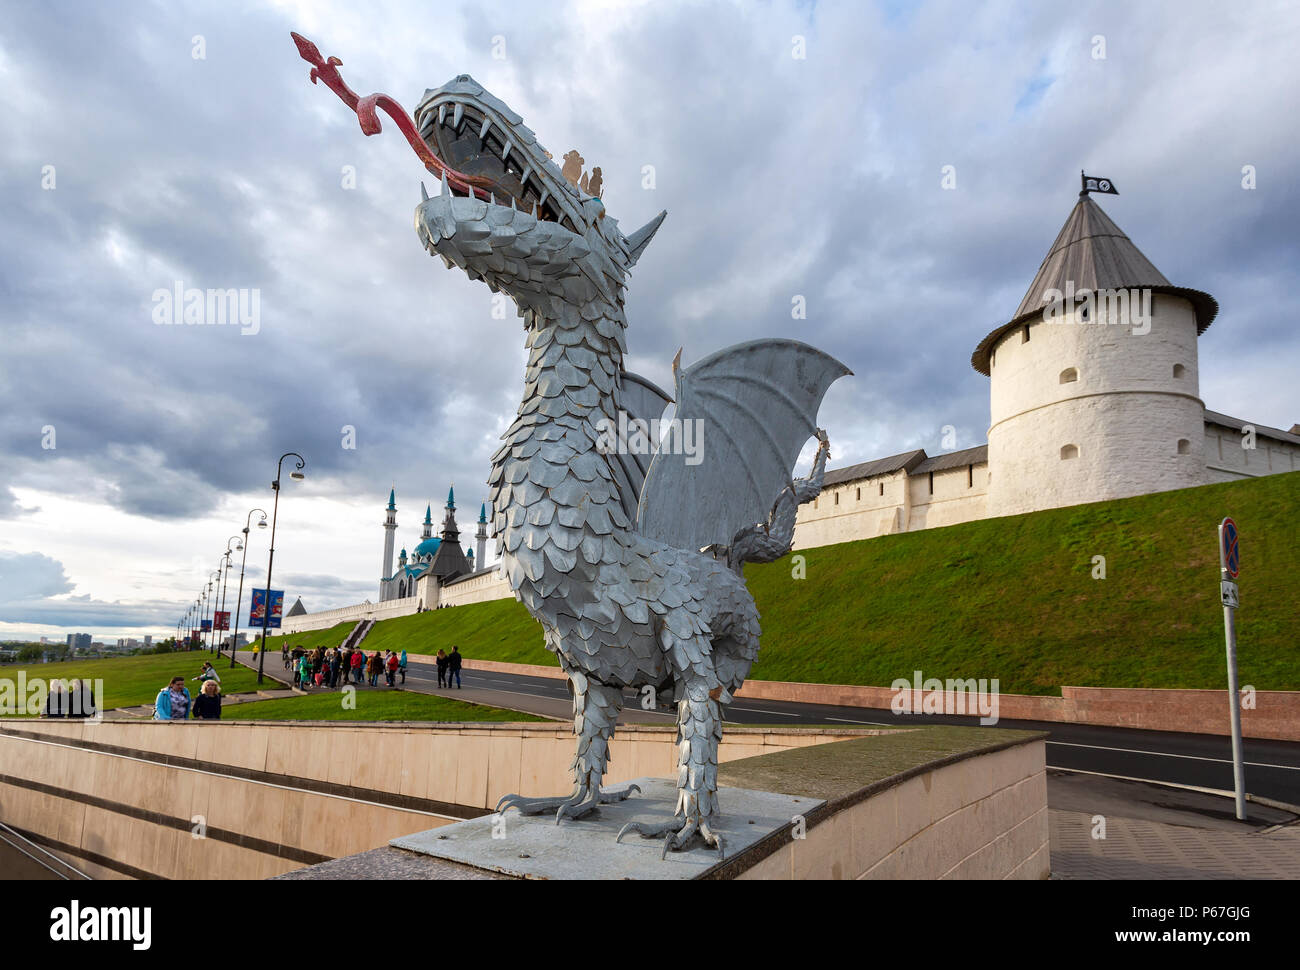 Kazan, Russland - 10. Juni 2018: Skulptur des mythischen Schlange Zilant, das offizielle Symbol von Kasan, in der Nähe der Kasaner Kreml und Kul Sharif Moschee, die R Stockfoto